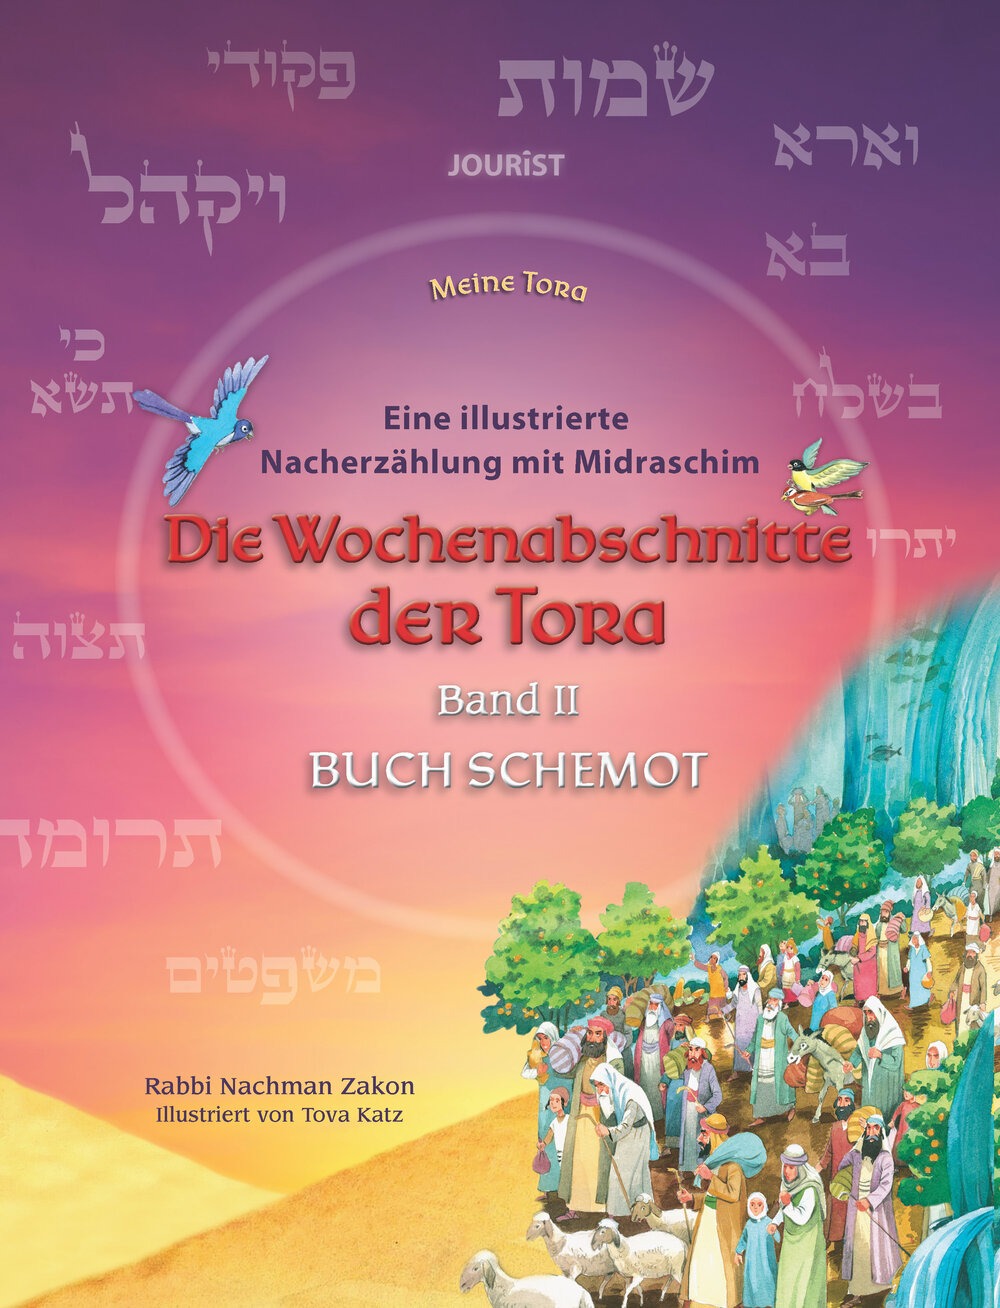 Die Wochenabschnitte der Tora. Band 2. Buch Schemot. Eine illustrierte Nacherzählung mit Midraschim.